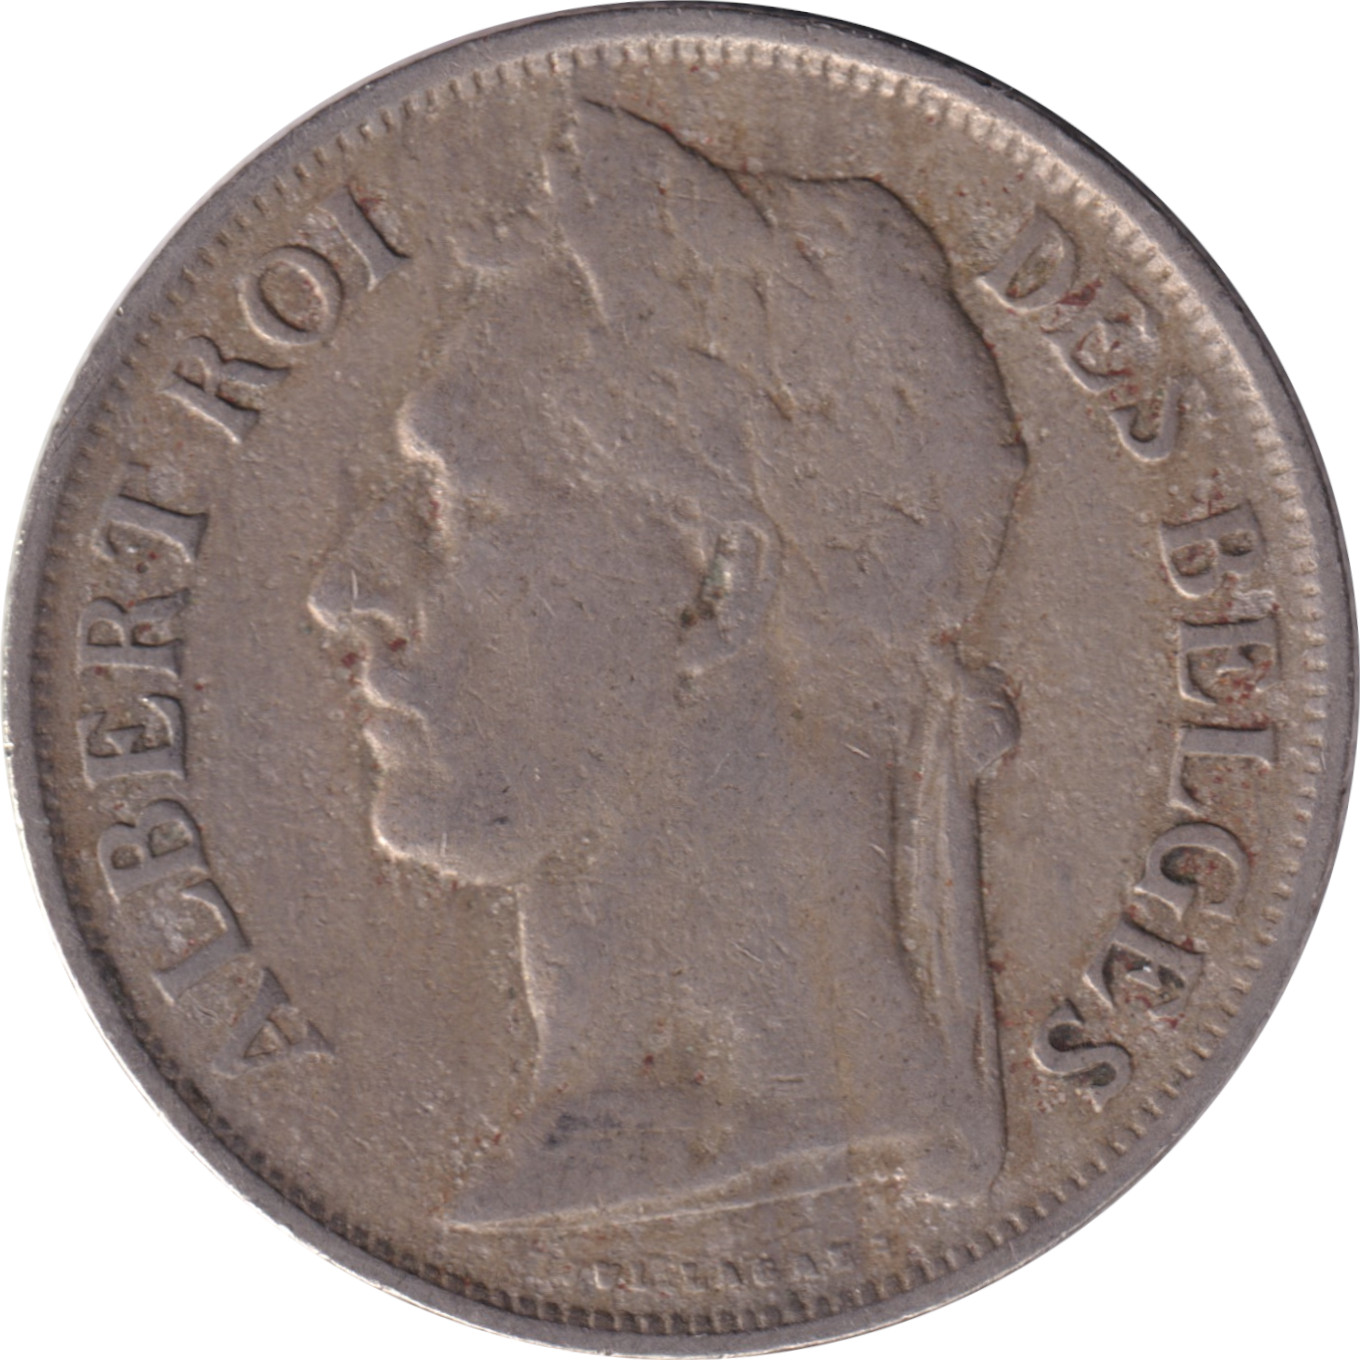 1 franc - Albert I